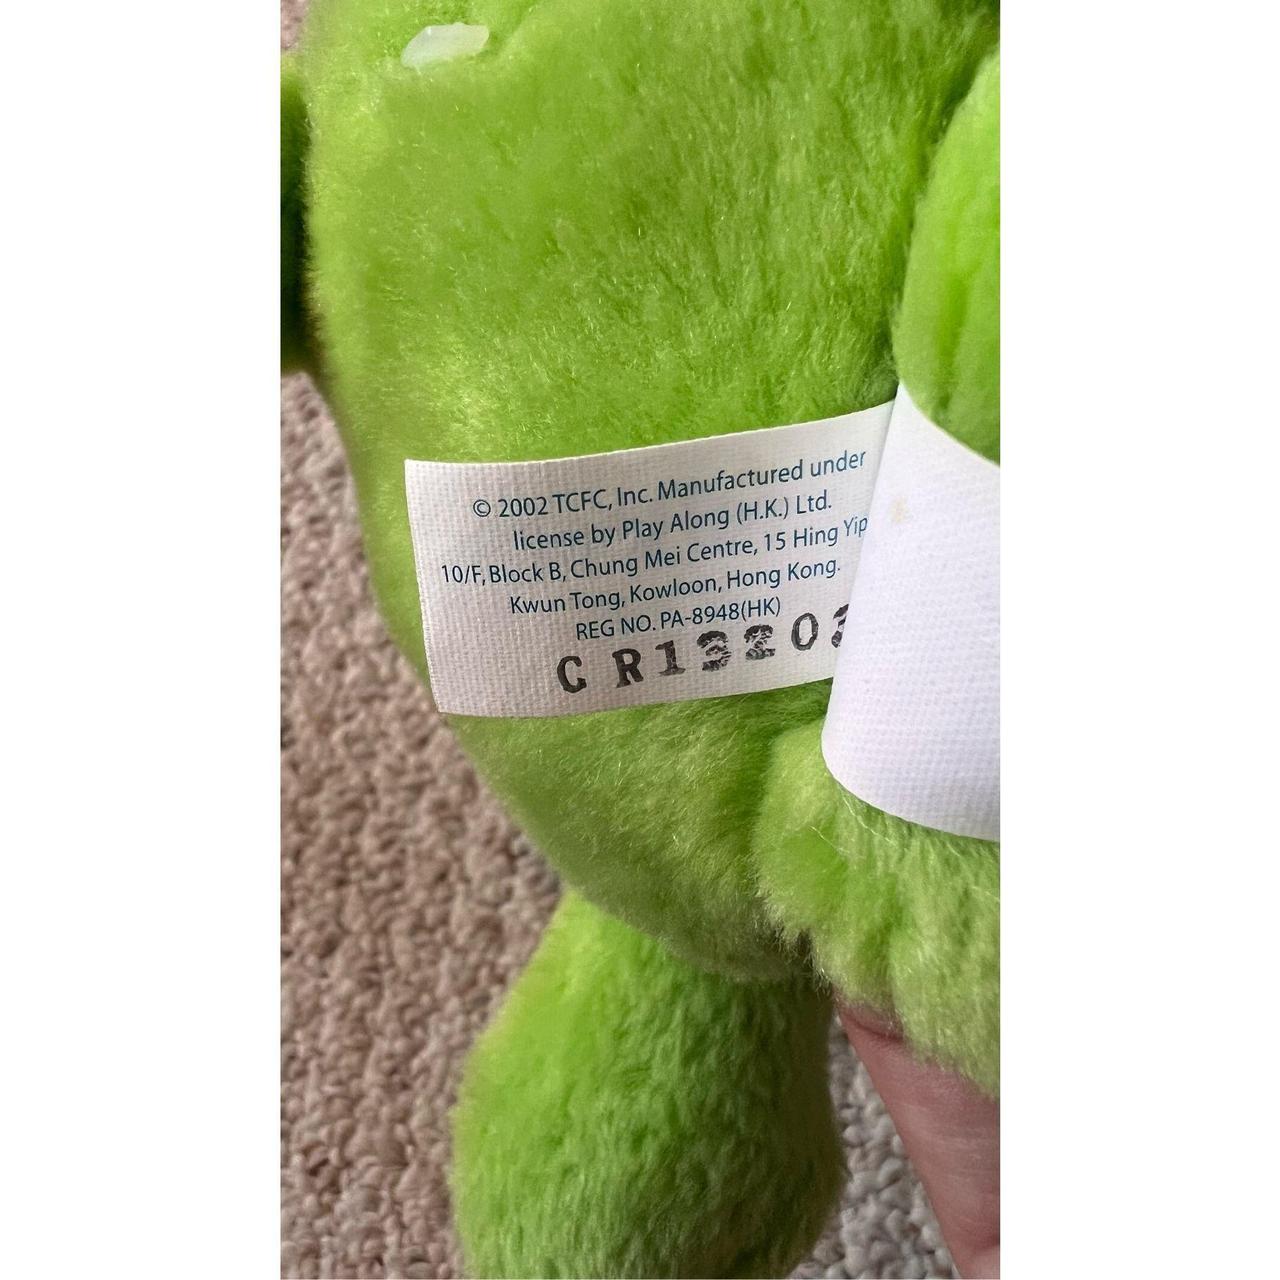 Care Bear Good Luck 20th Anniversary green stuffed - Depop